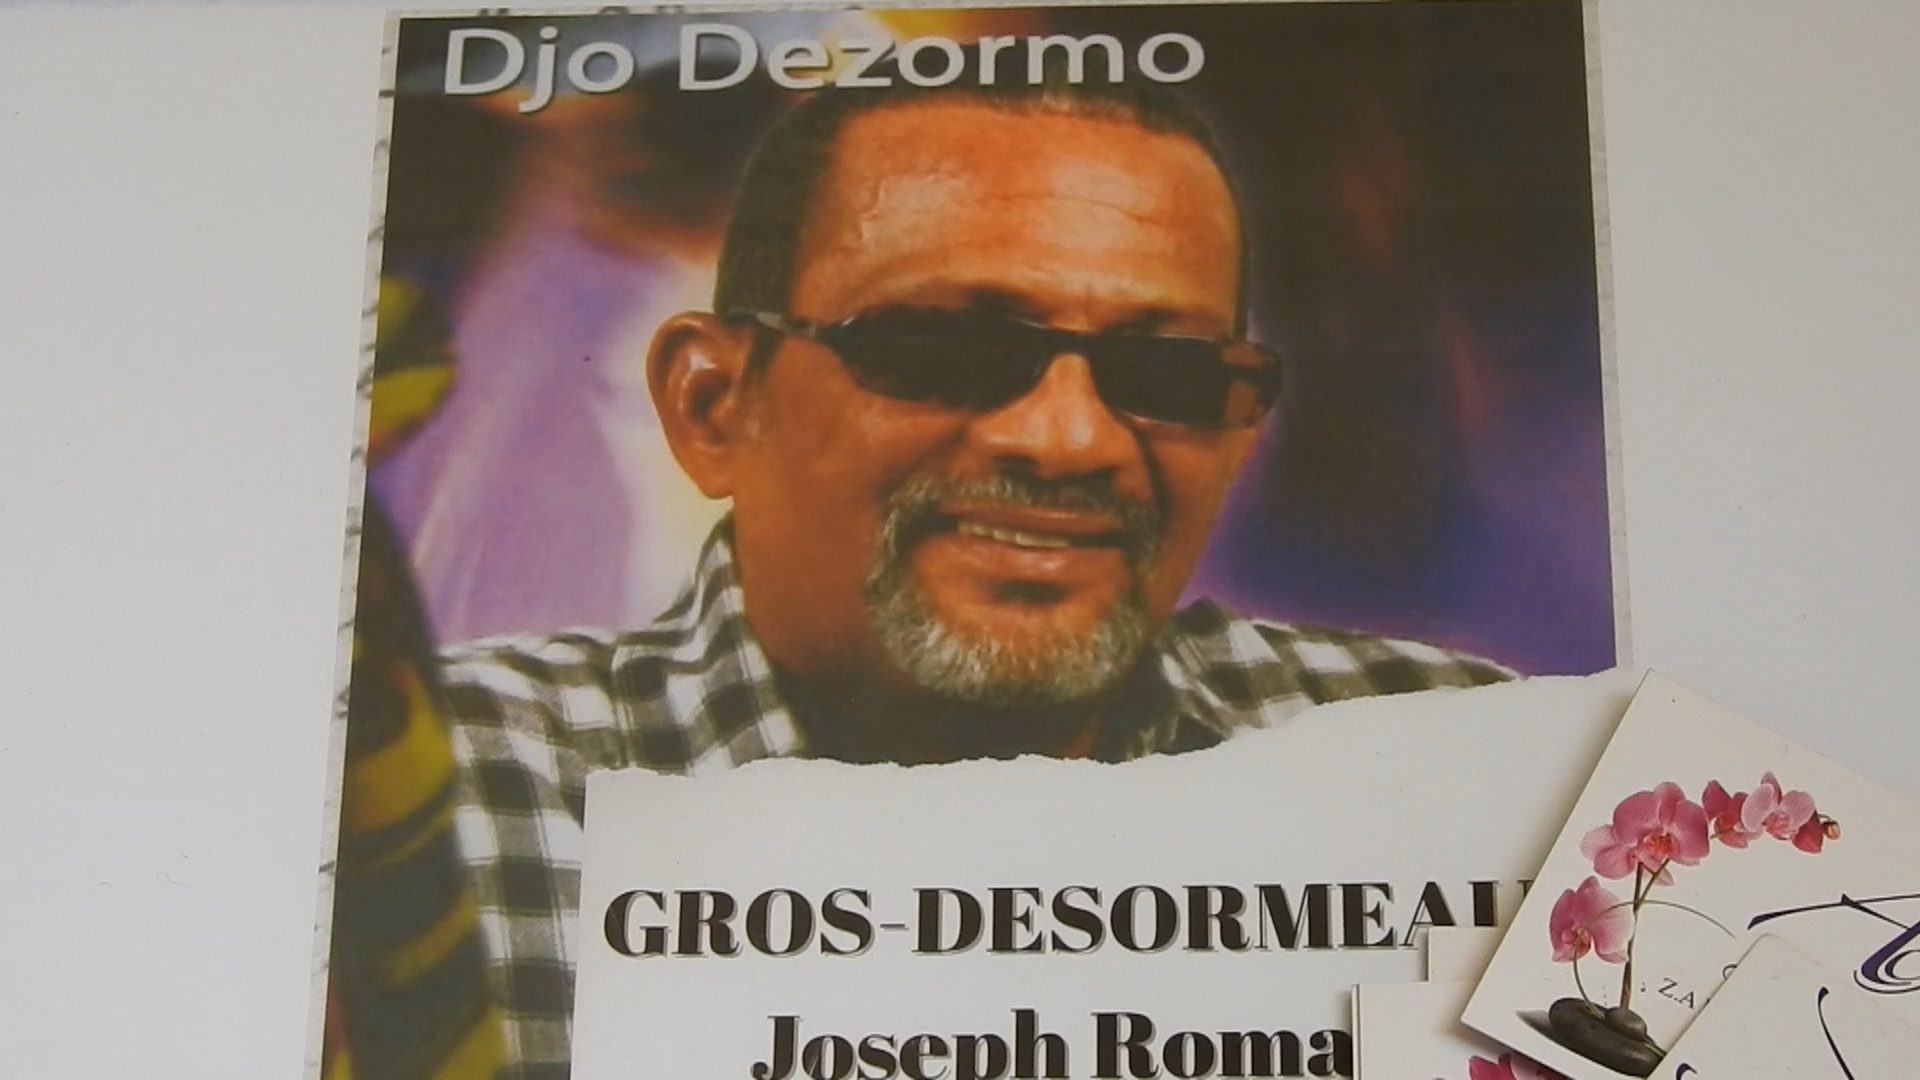 [Vidéo] Martinique. Les obsèques de Djo DÉZORMO à Rivière Pilote